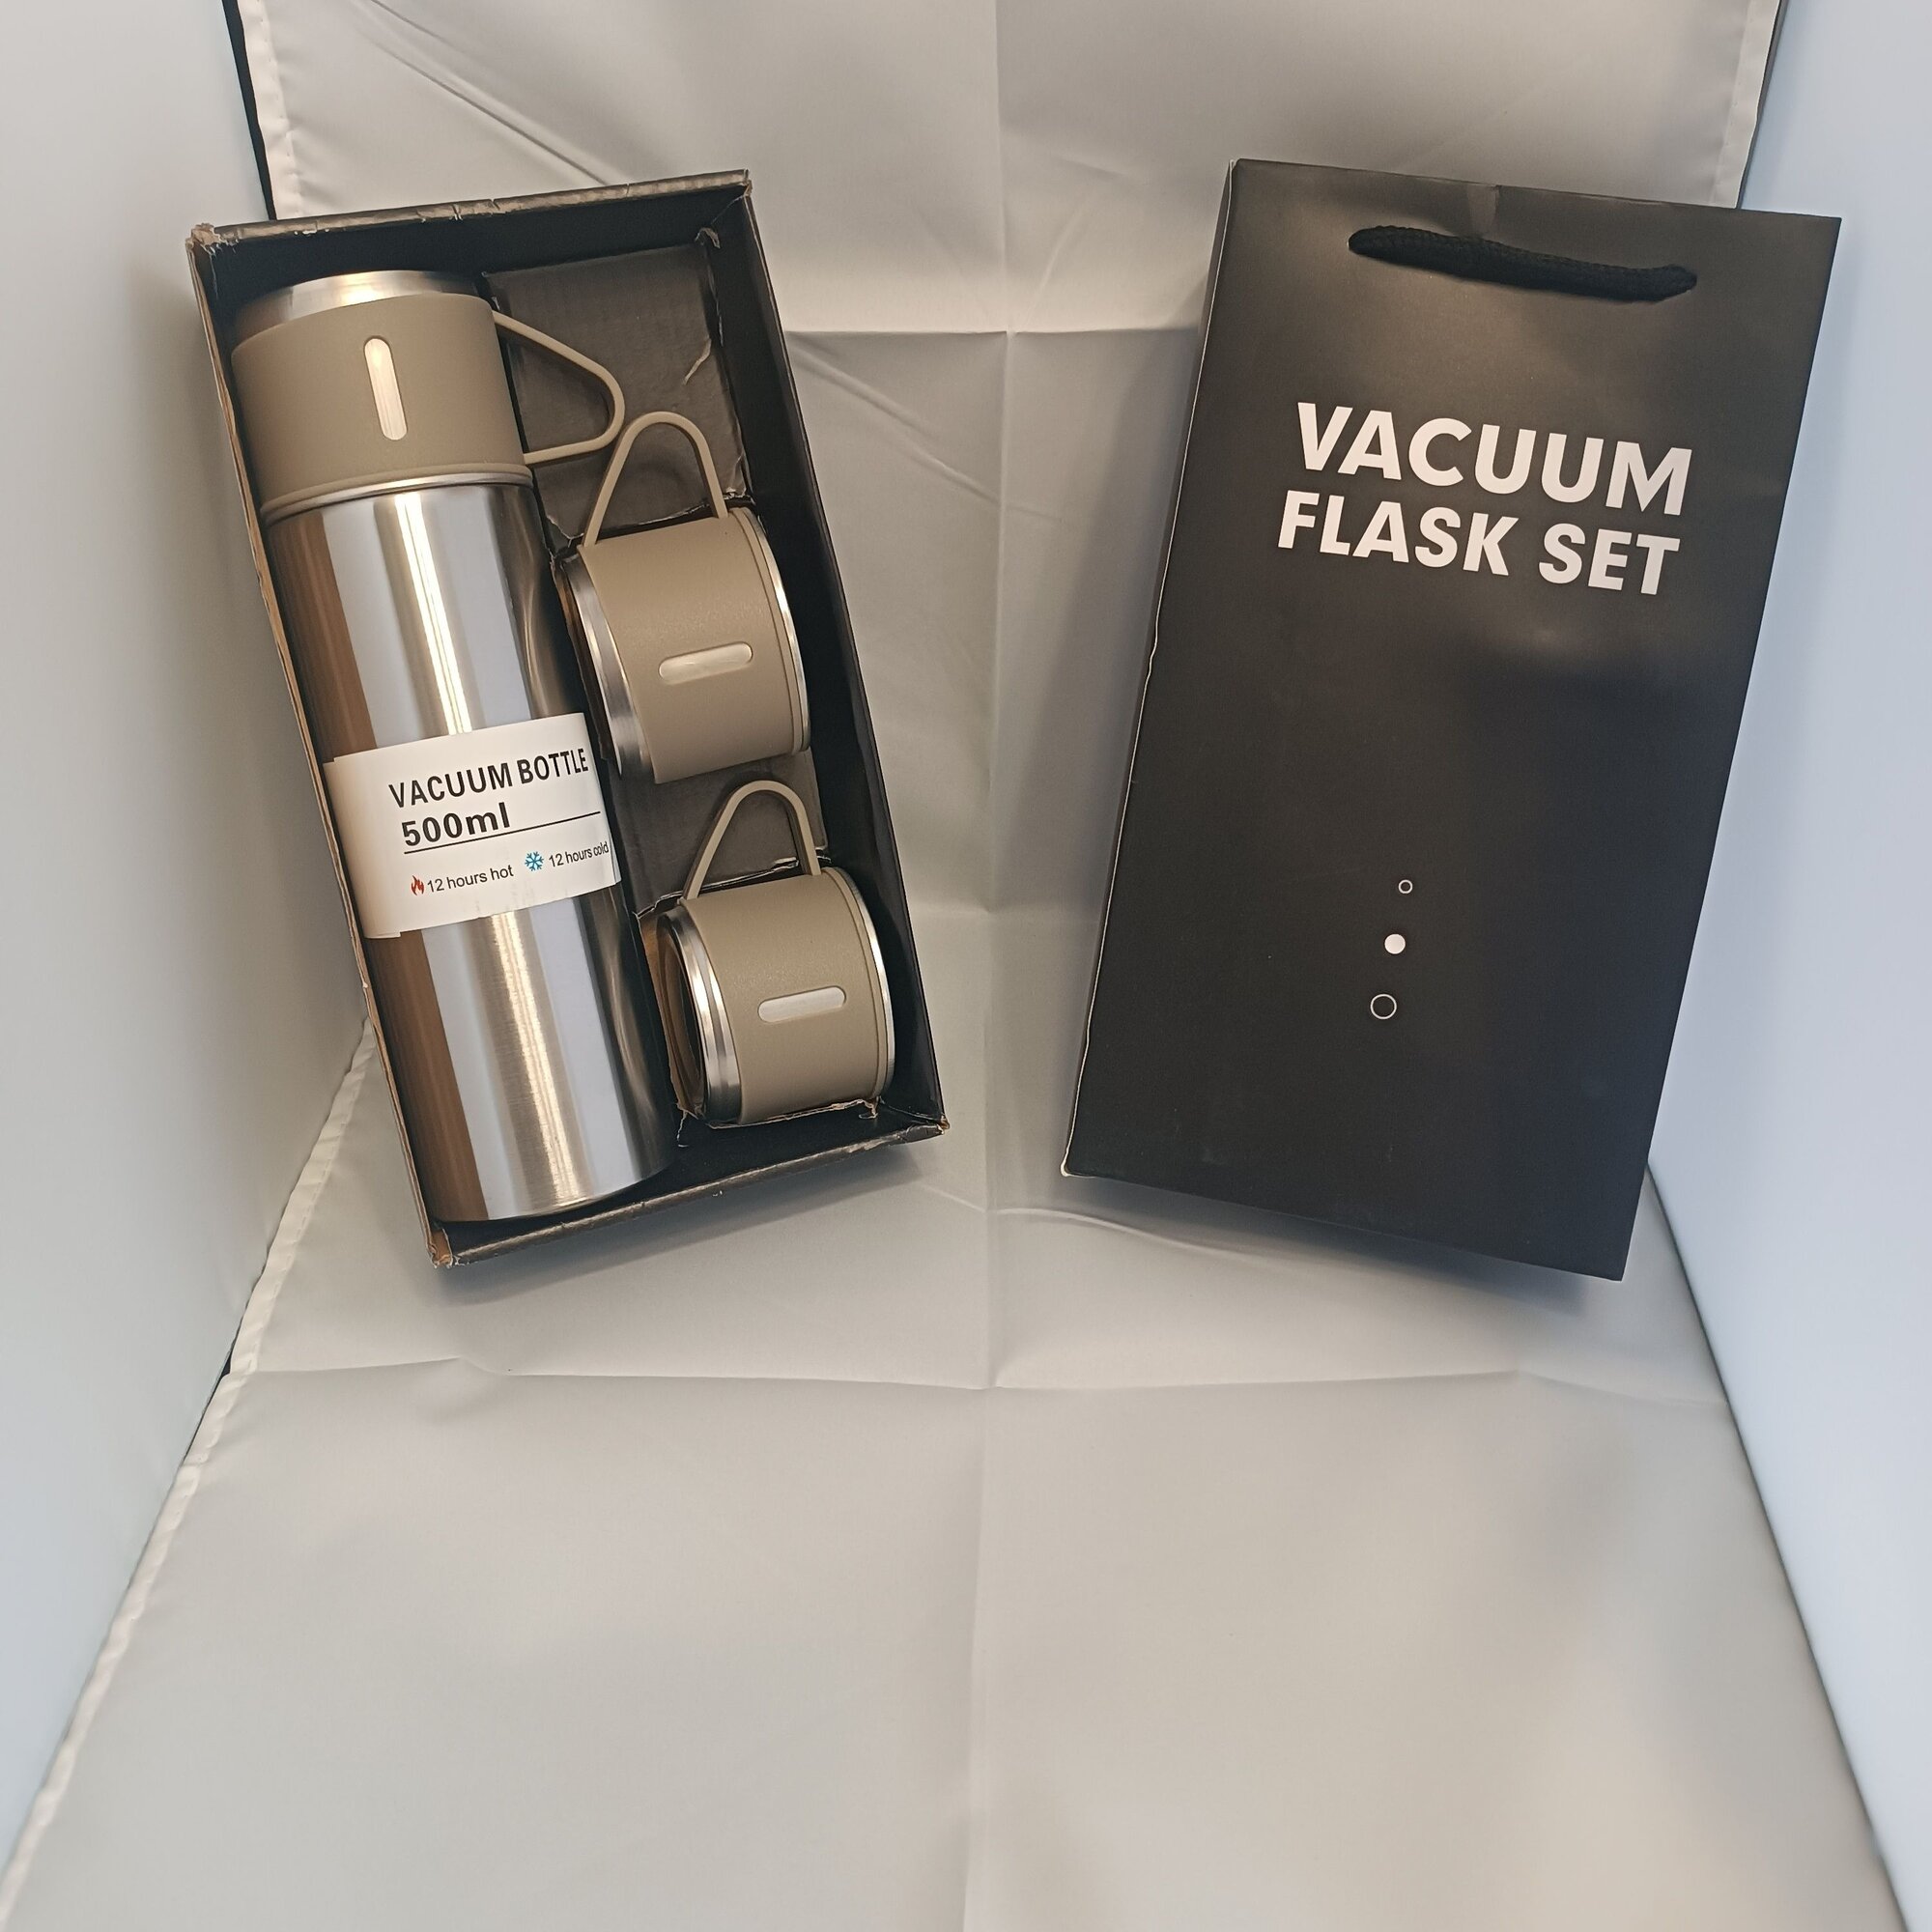 Термос Vacuum Flask Set - 12 Часов Нагревания и Сохранения Тепла. В подарочной упаковке. Бежевый